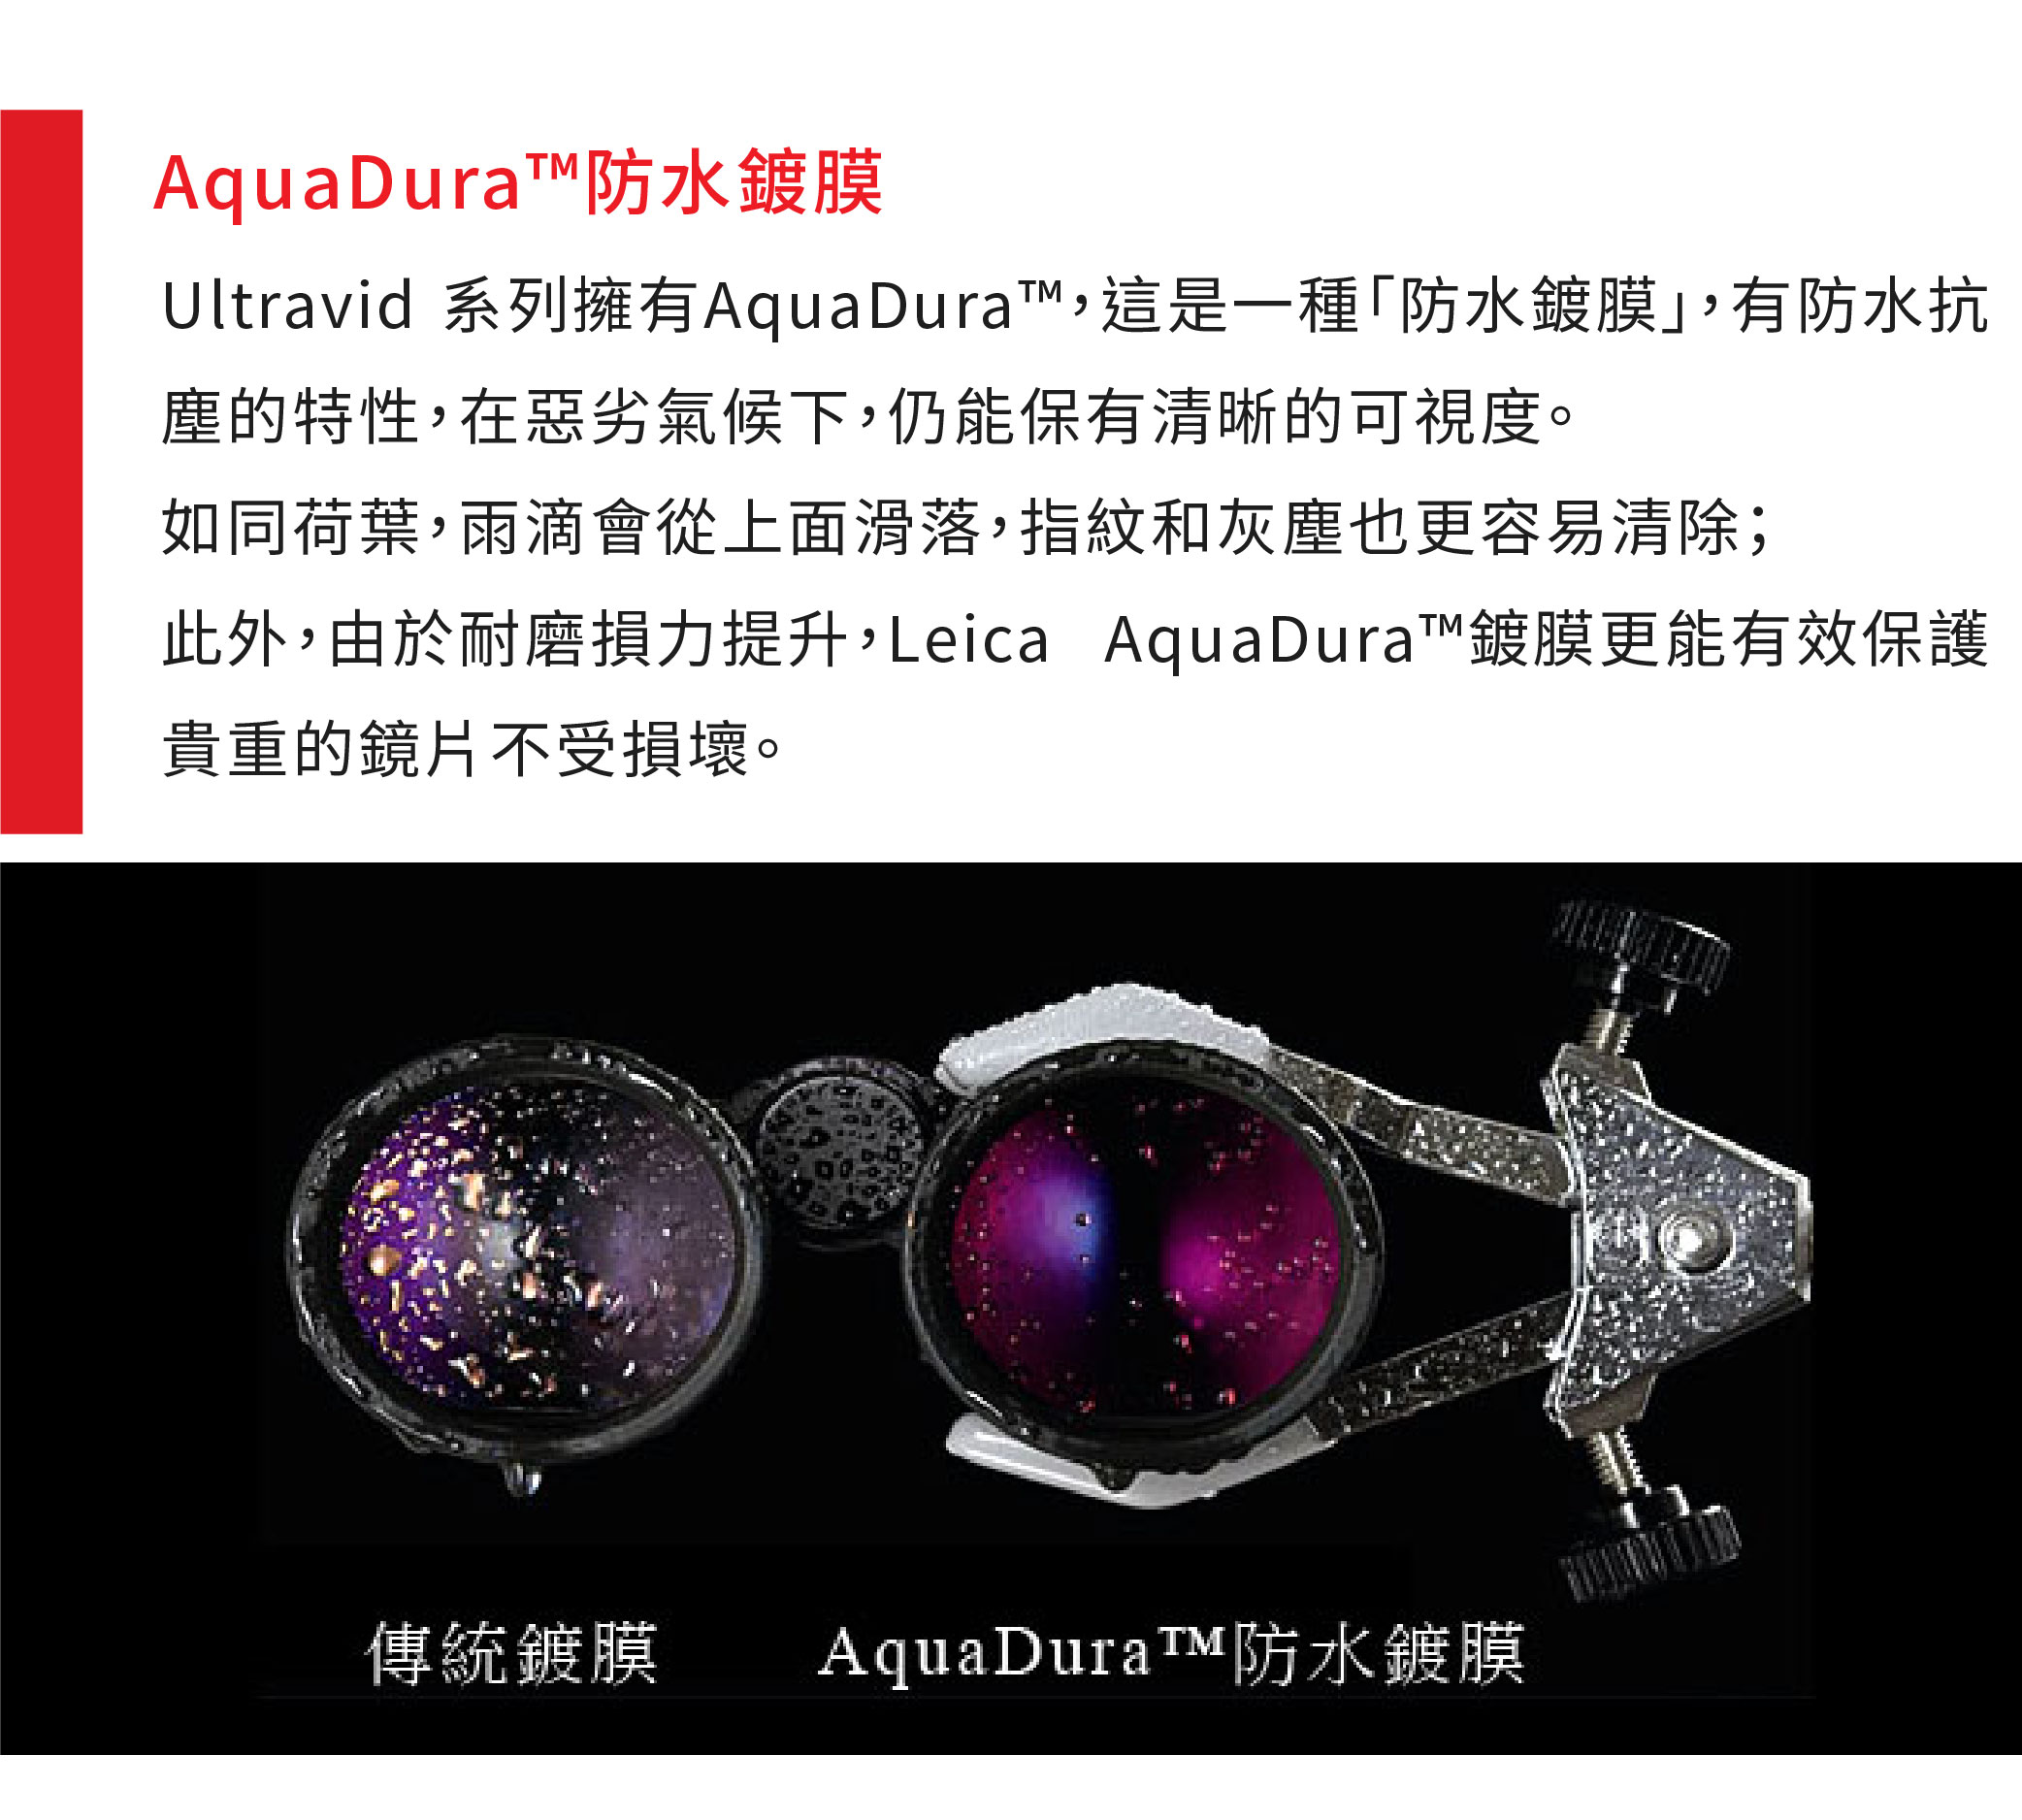 防水鍍膜Ultravid 系列擁有AquaDura這是一種「防水鍍膜有防水抗塵的特性,在惡劣氣候下,仍能保有清晰的可視度。如同荷葉,雨滴會從上面滑落,指紋和灰塵也更容易清除;此外,由於耐磨損力提升,Leica AquaDura鍍膜更能有效保護貴重的鏡片不受損壞。傳統鍍膜AquaDura™防水鍍膜